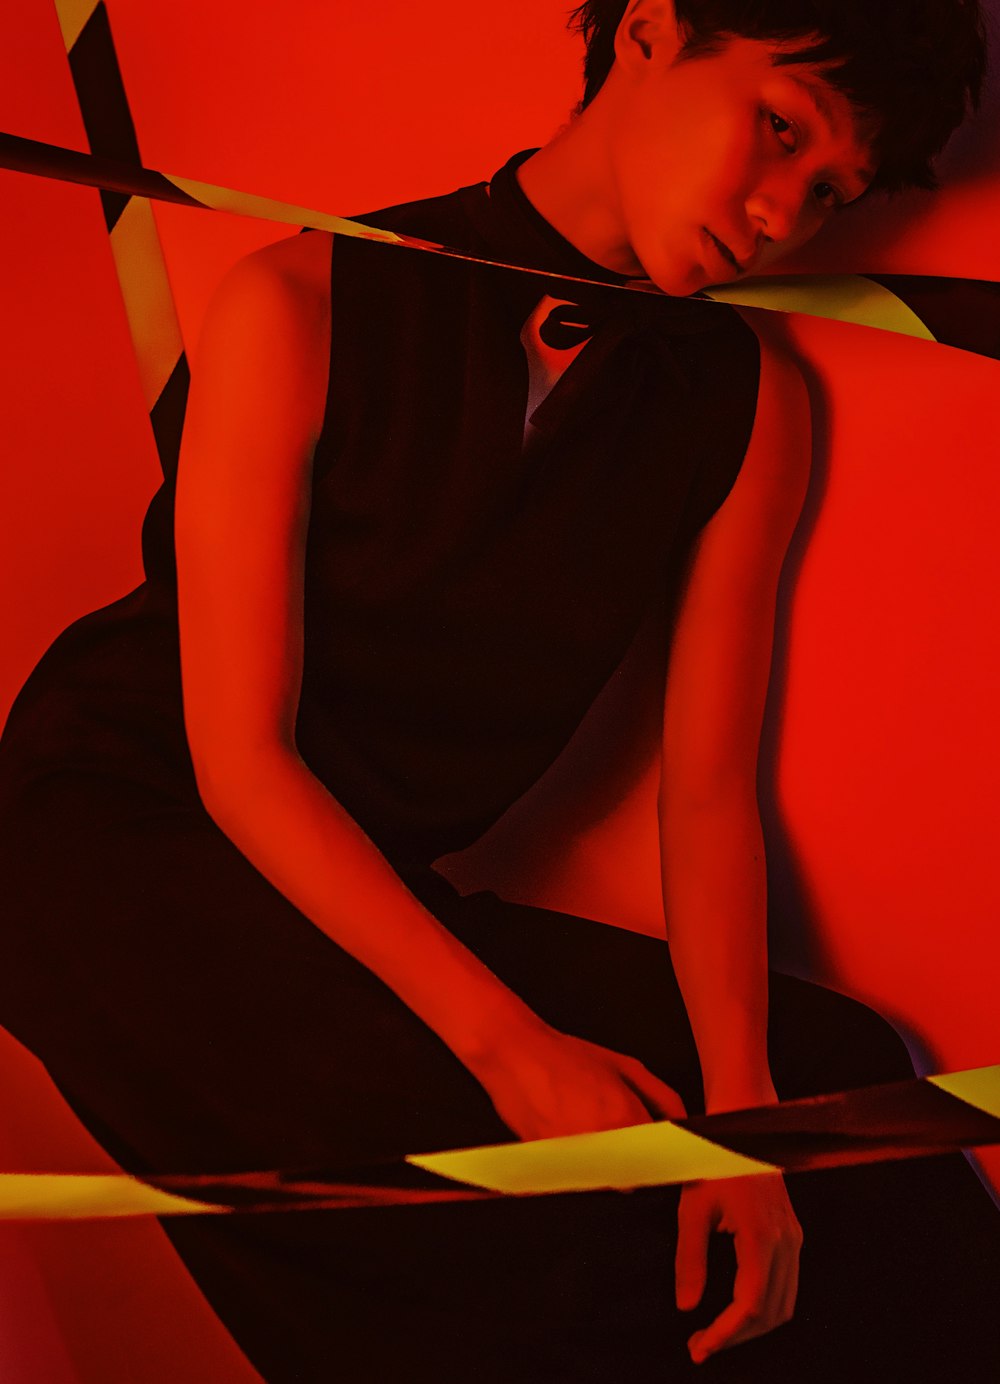 Eine Frau im schwarzen Kleid sitzt an einer roten Wand